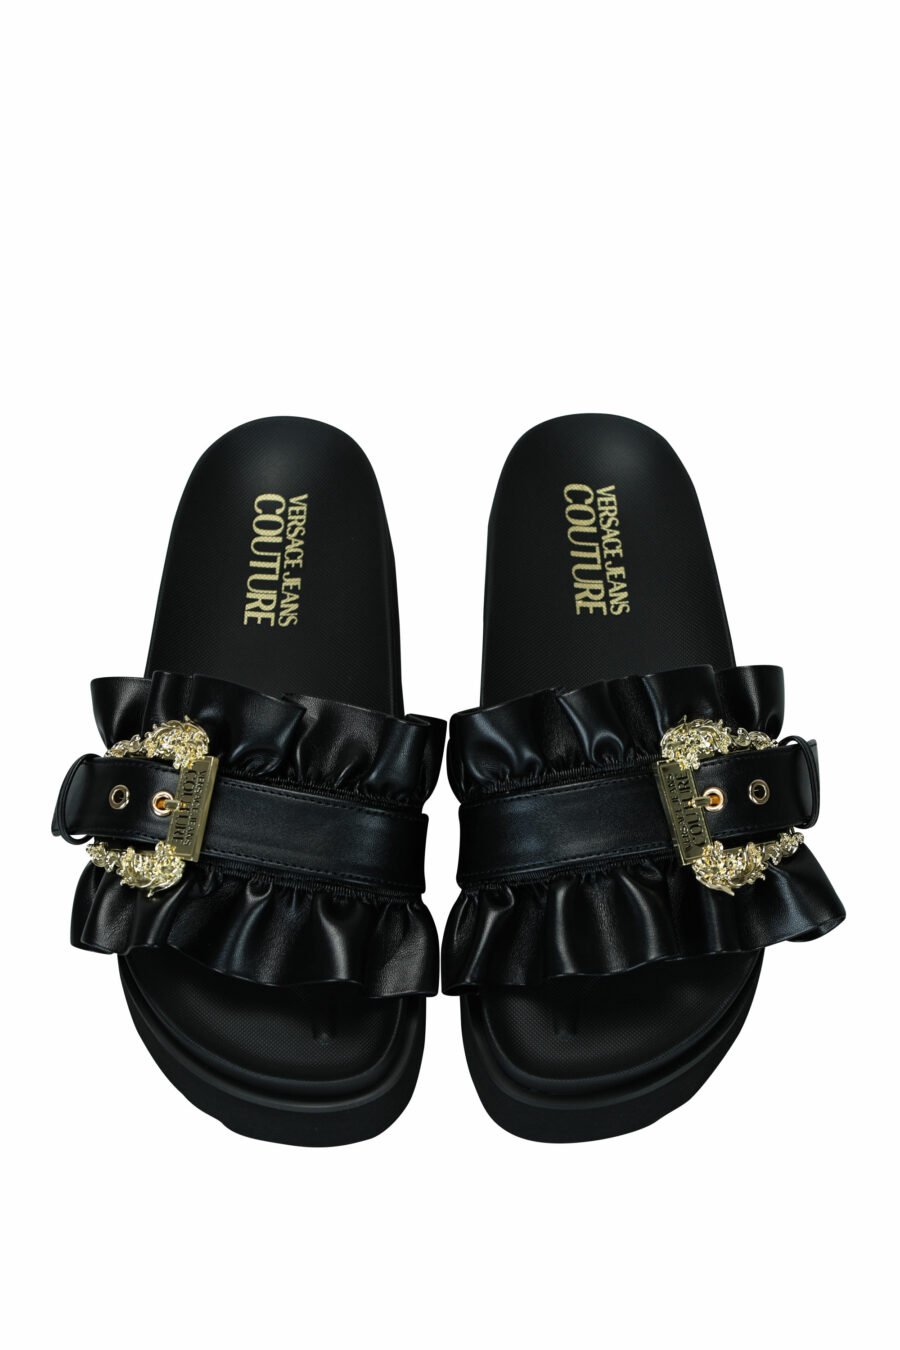 Sandales noires à plateforme avec boucle baroque dorée - 8052019607192 2